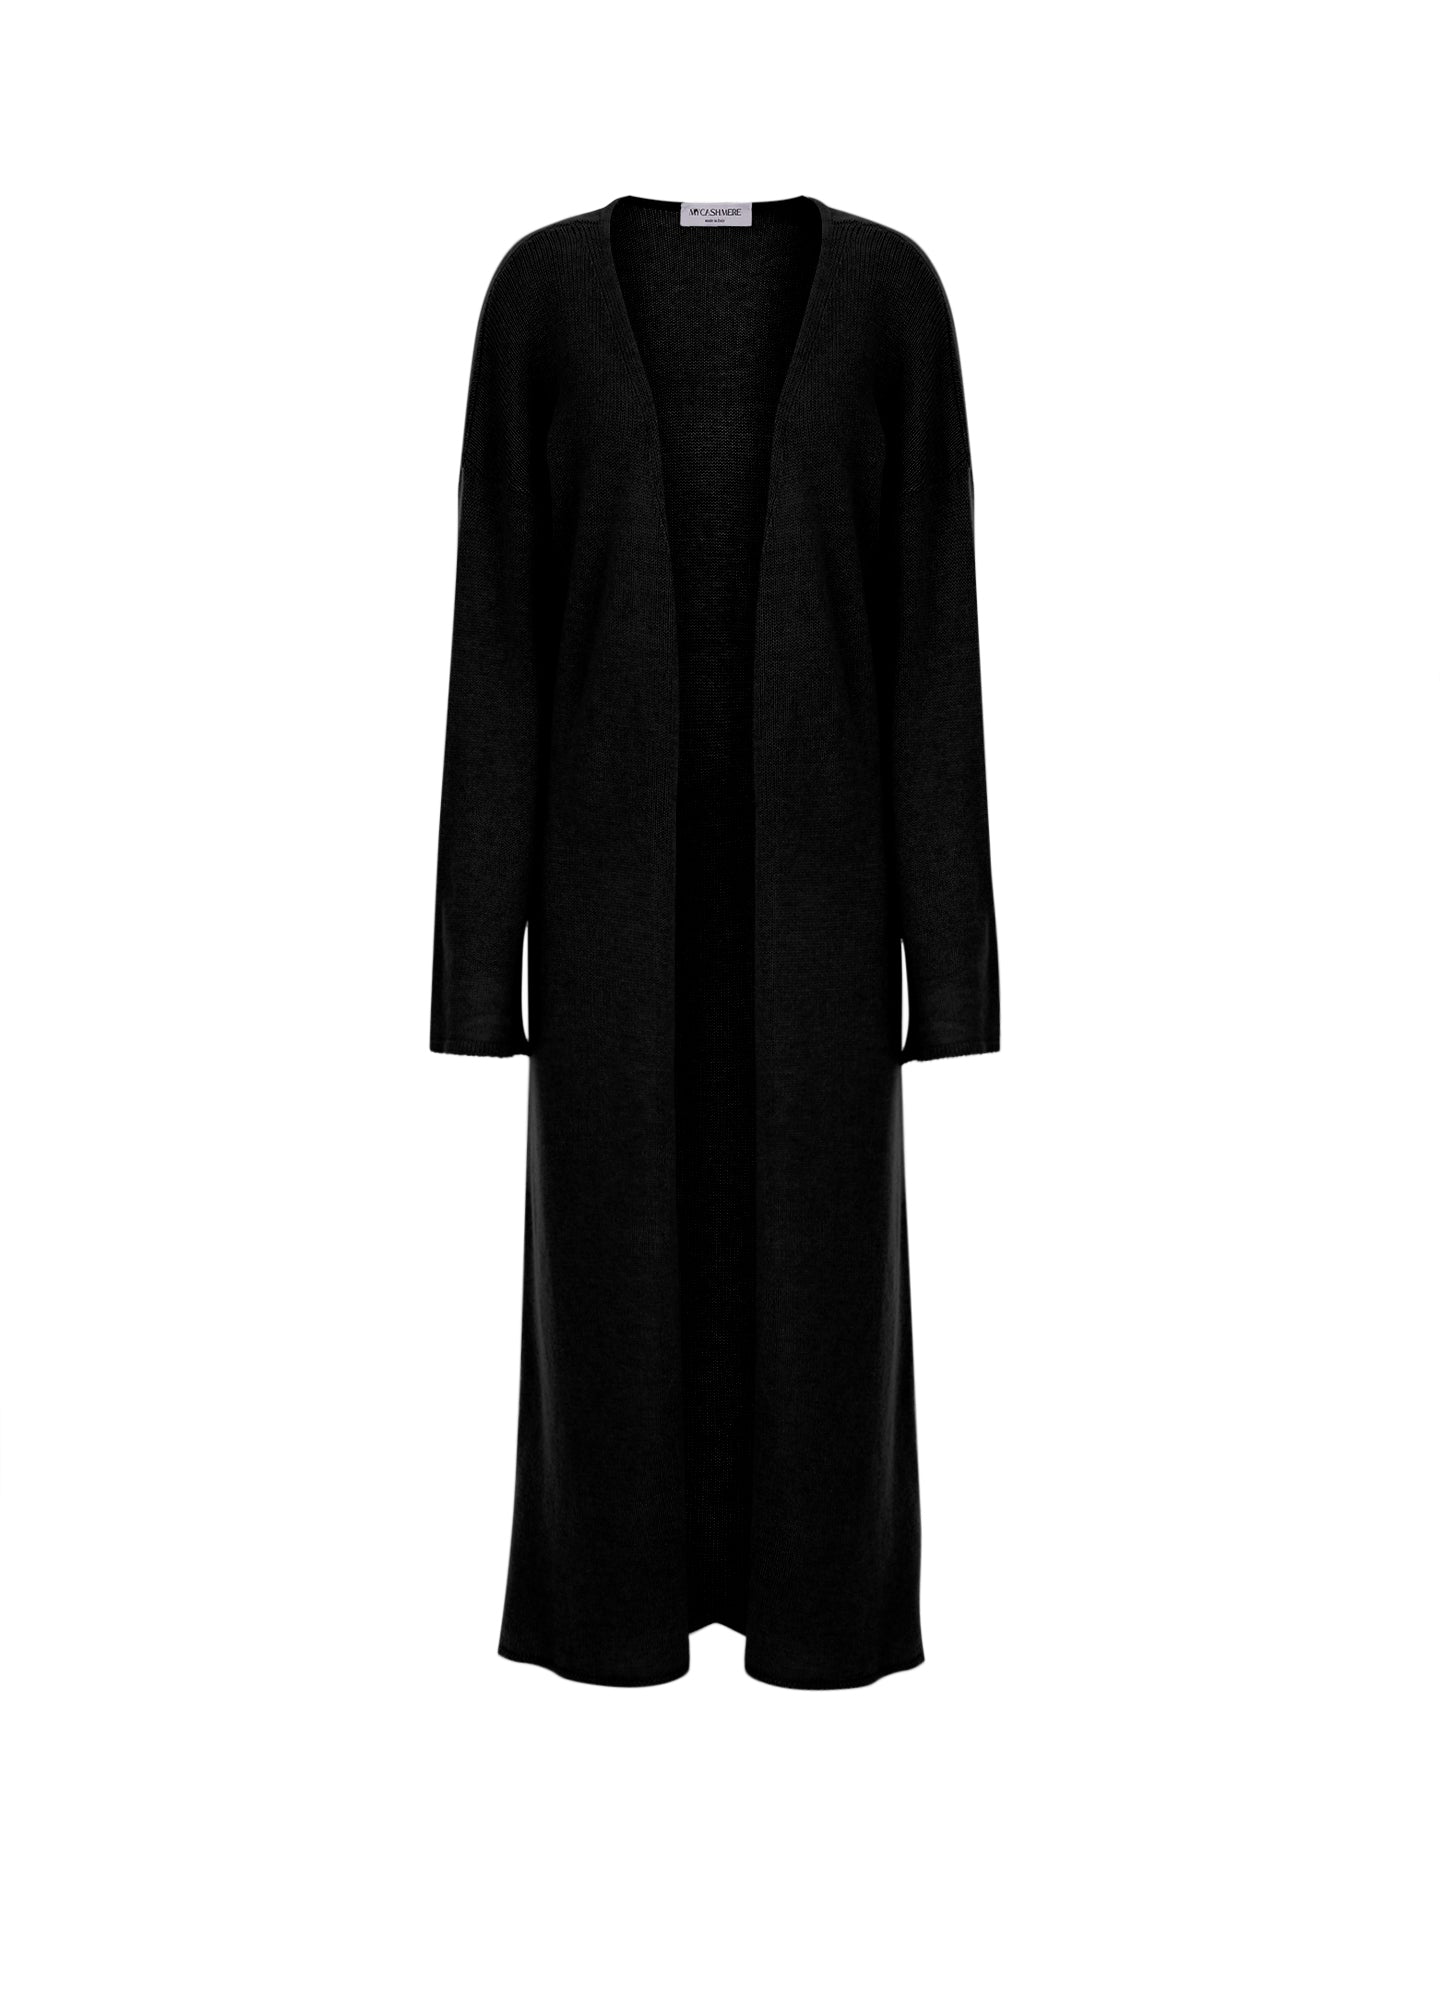 Designer women's cashmere maxi cardigan in Black